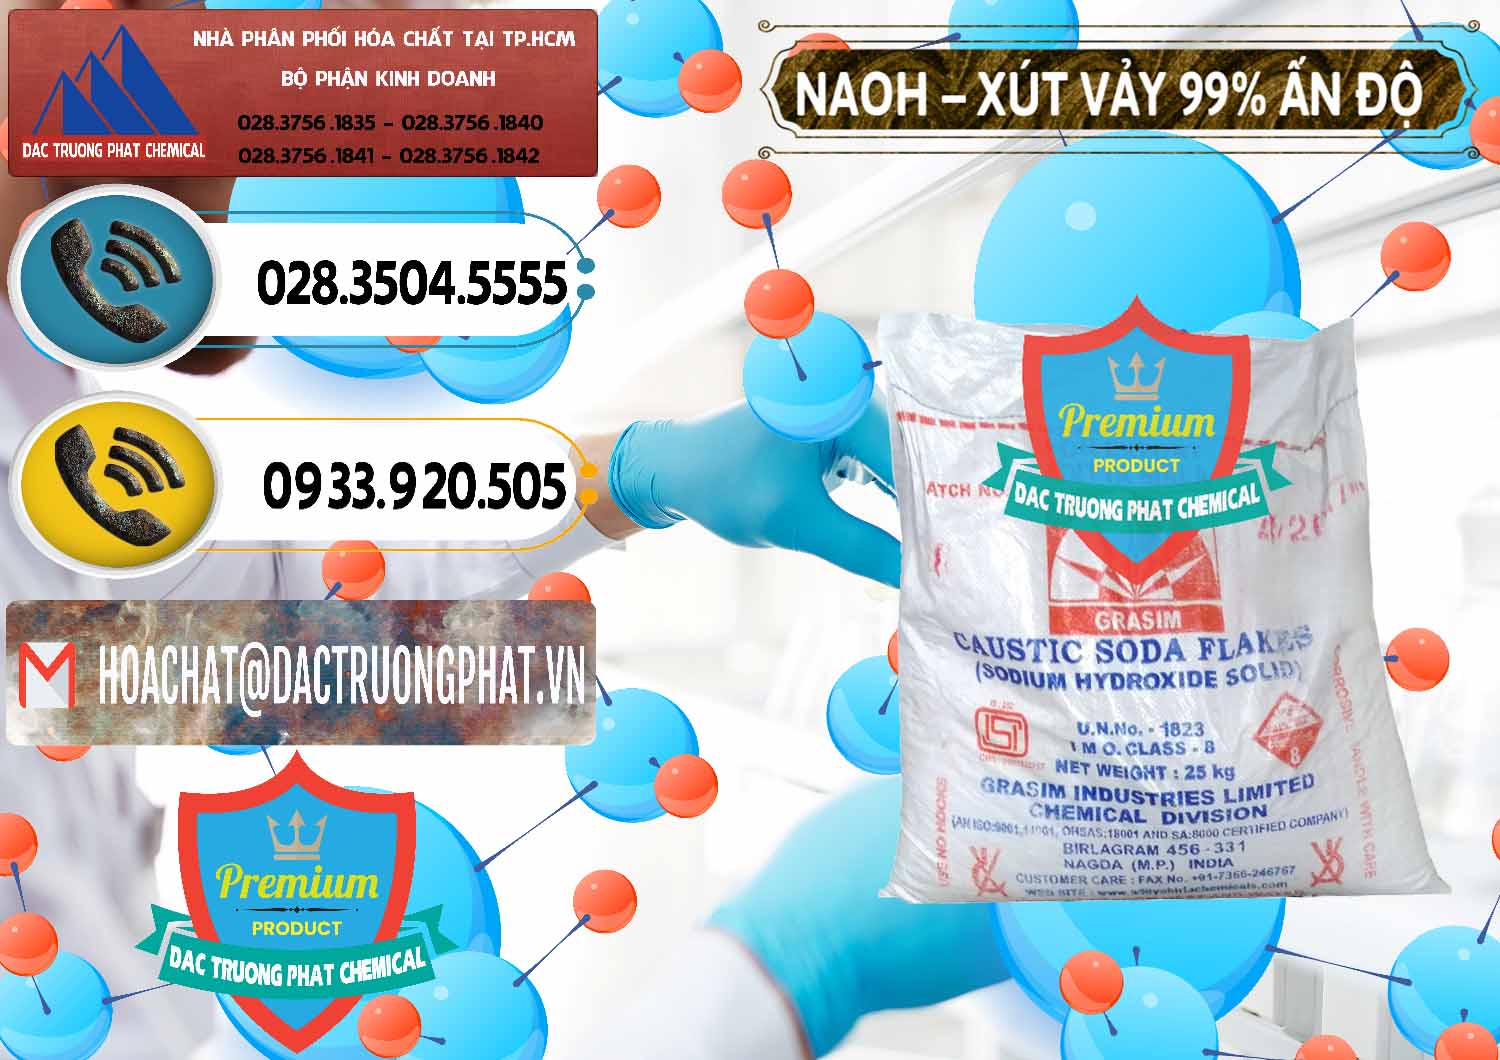 Nơi chuyên kinh doanh & bán Xút Vảy - NaOH Vảy 99% Aditya Birla Grasim Ấn Độ India - 0171 - Cty nhập khẩu ( cung cấp ) hóa chất tại TP.HCM - hoachatdetnhuom.vn